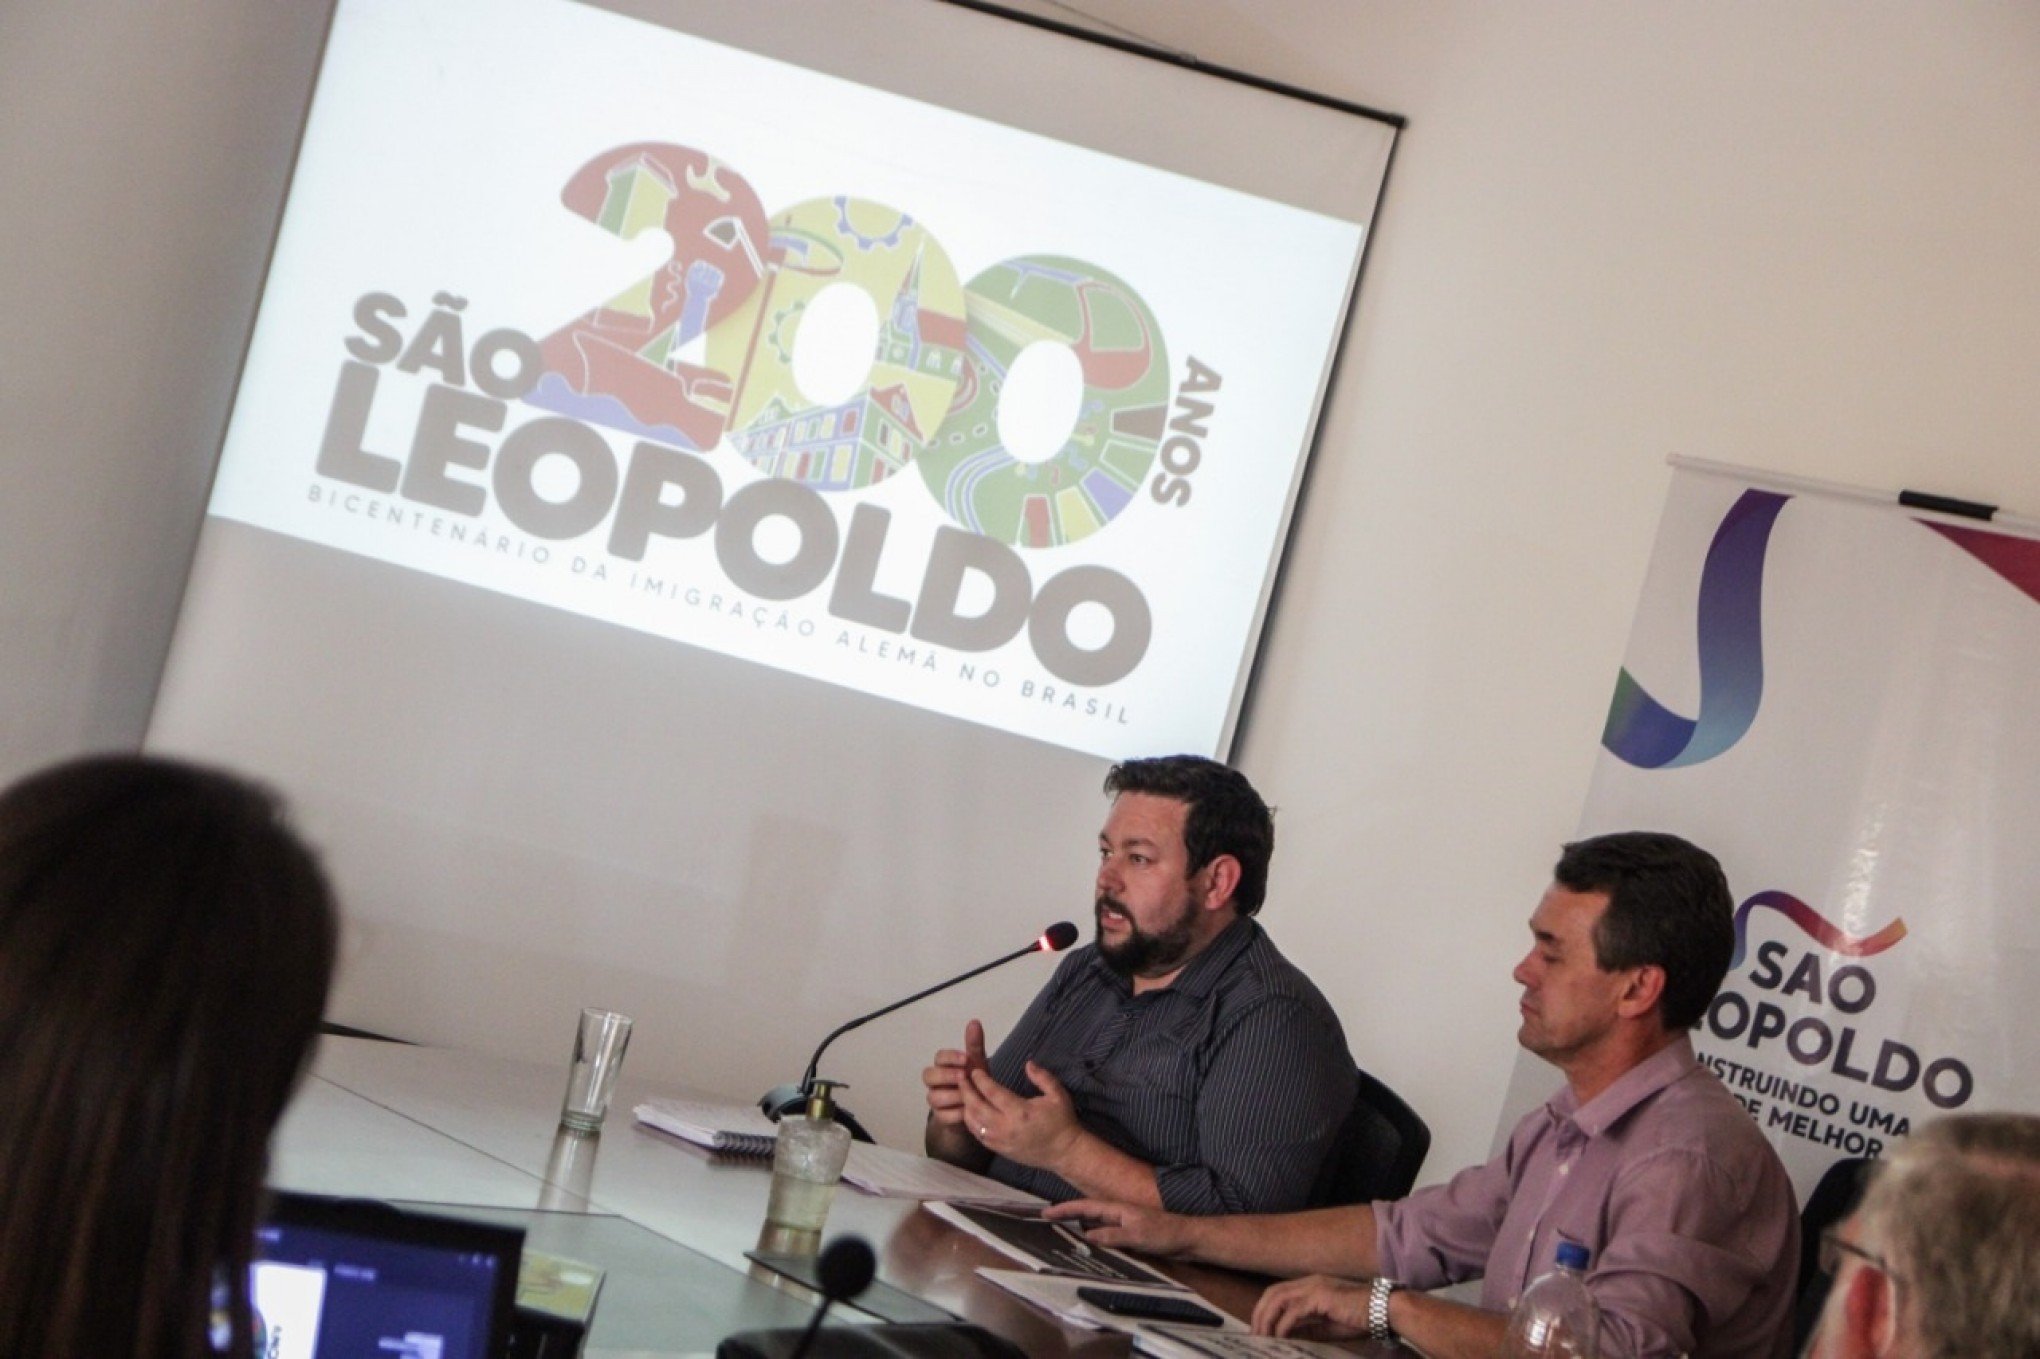 São Leopoldo präsentiert die visuelle Identität des 200. Jahrestages der deutschen Einwanderung – São Leopoldo